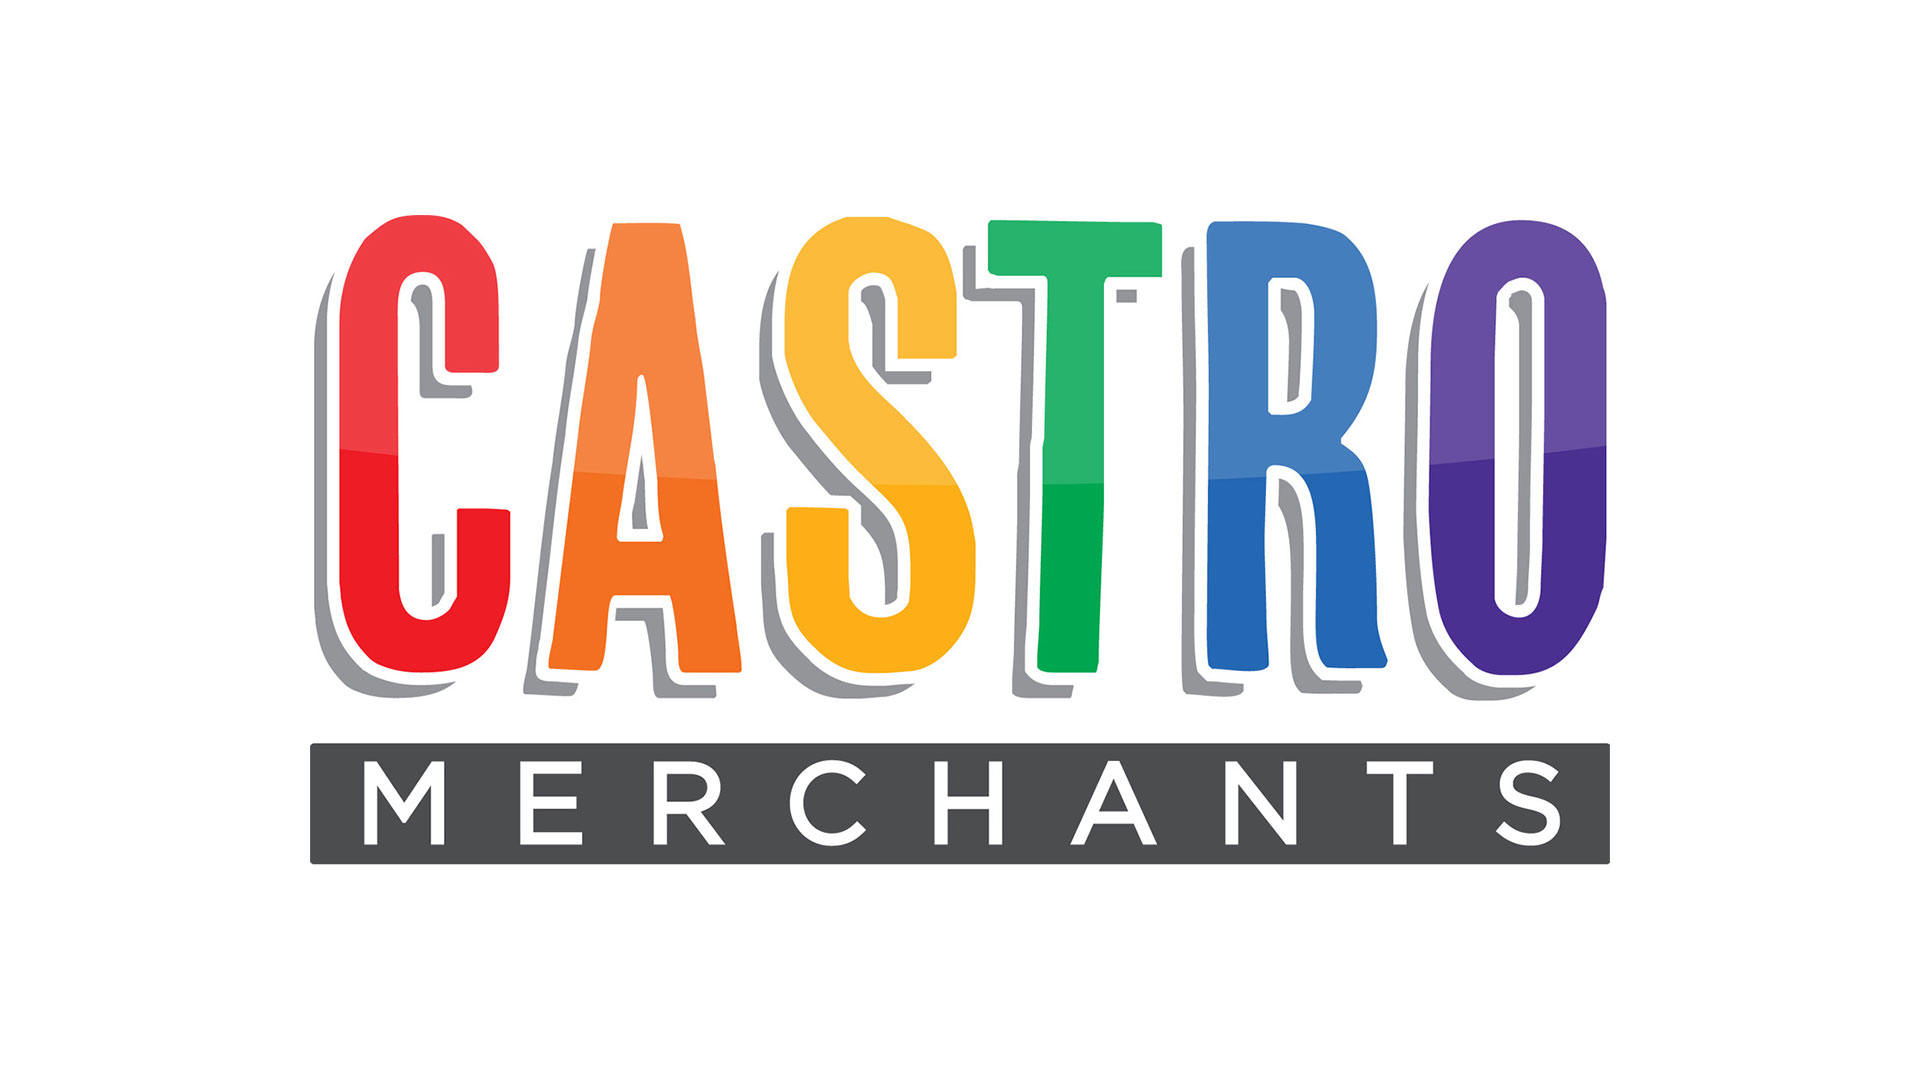 Castro Merchants